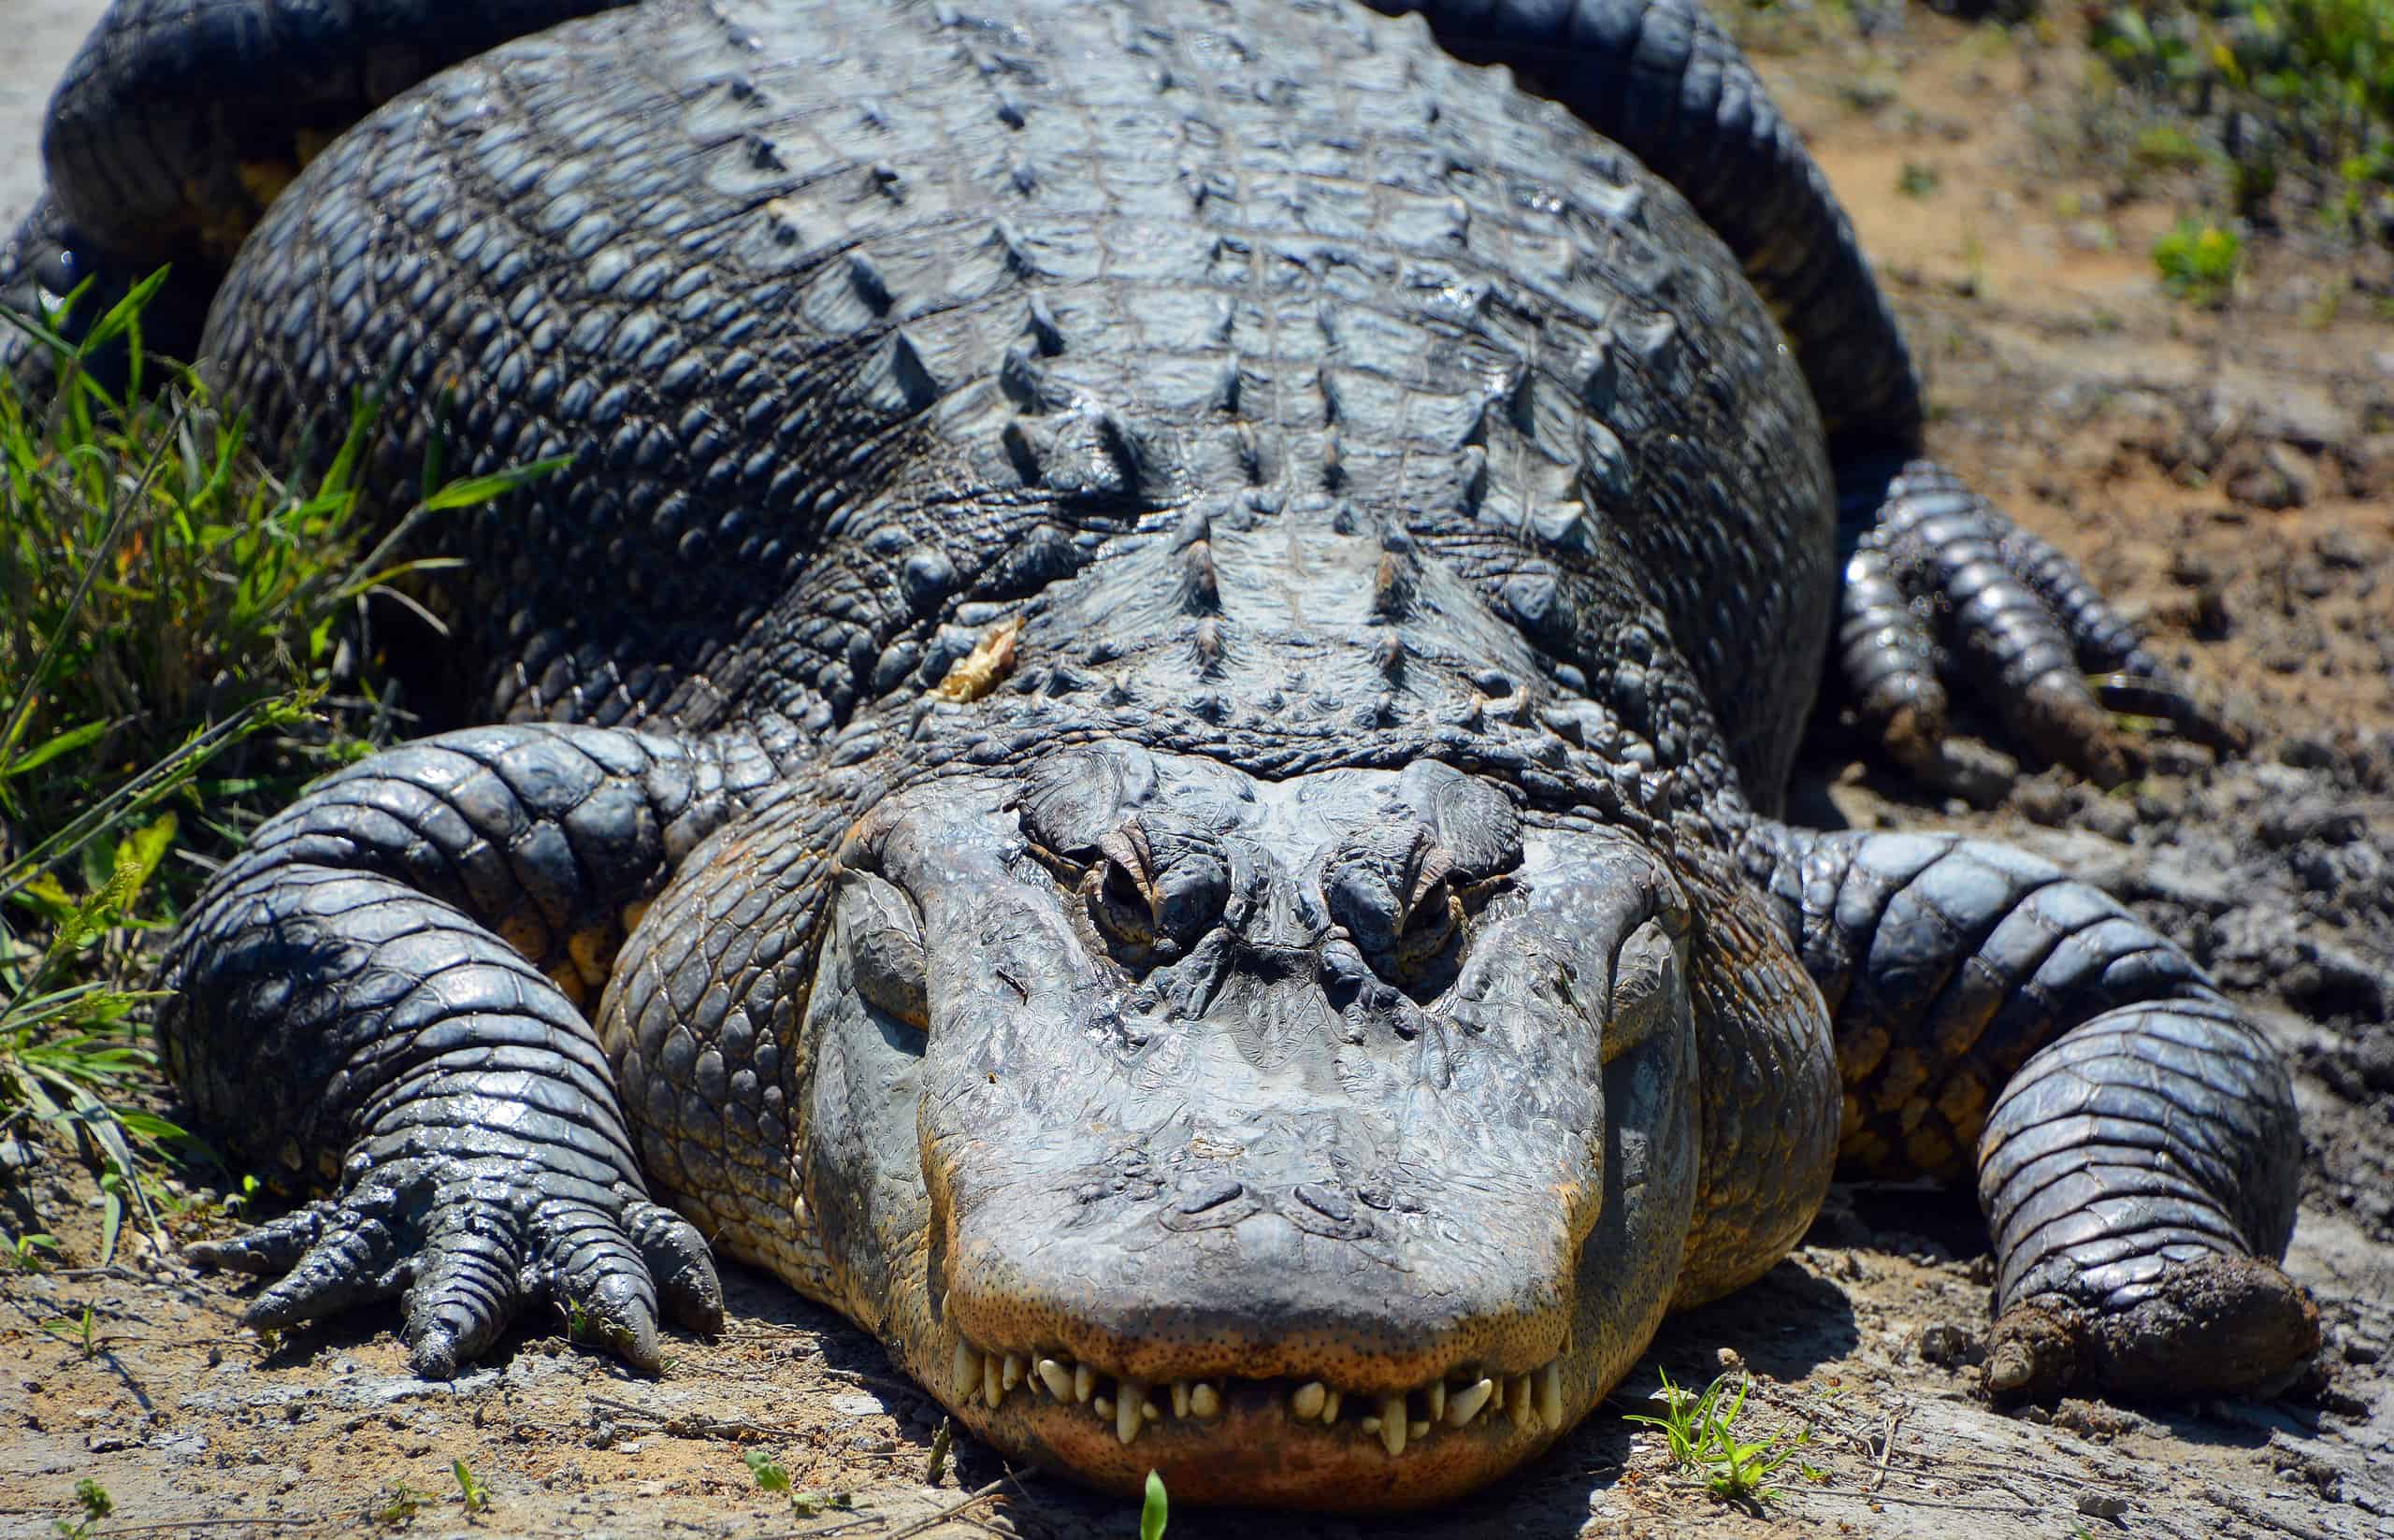 Alligators in Alabama: Is it Safe to Swim? - A-Z Animals